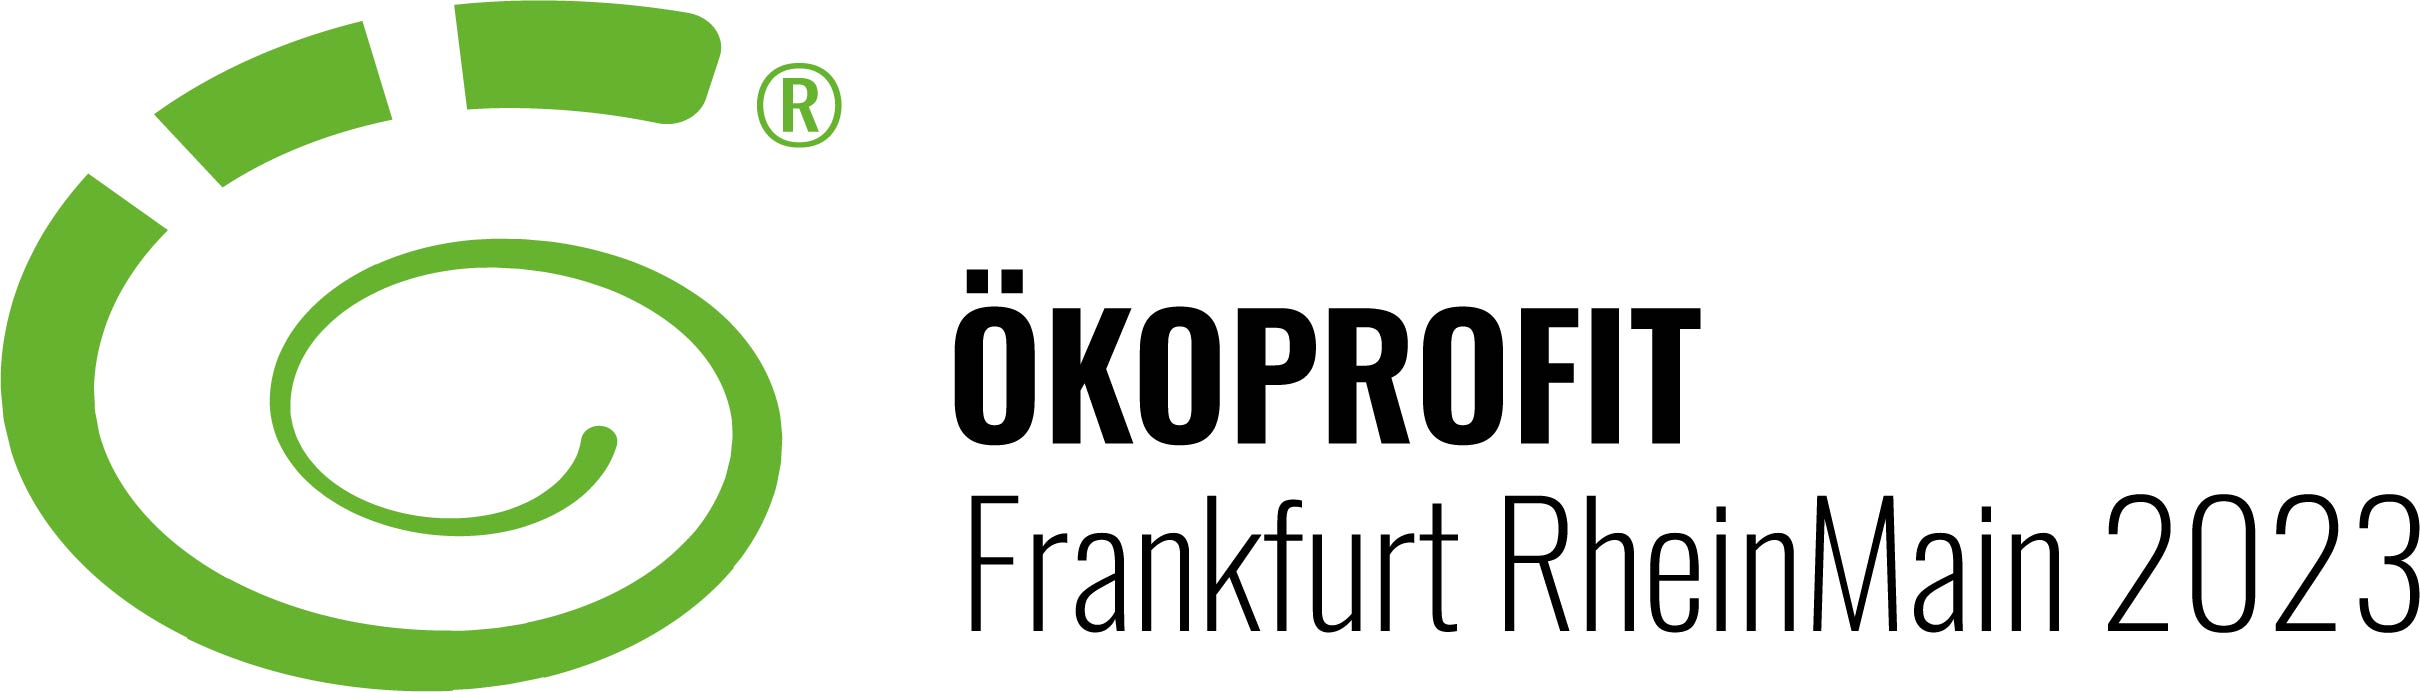 OeP Frankfurt 2023 002